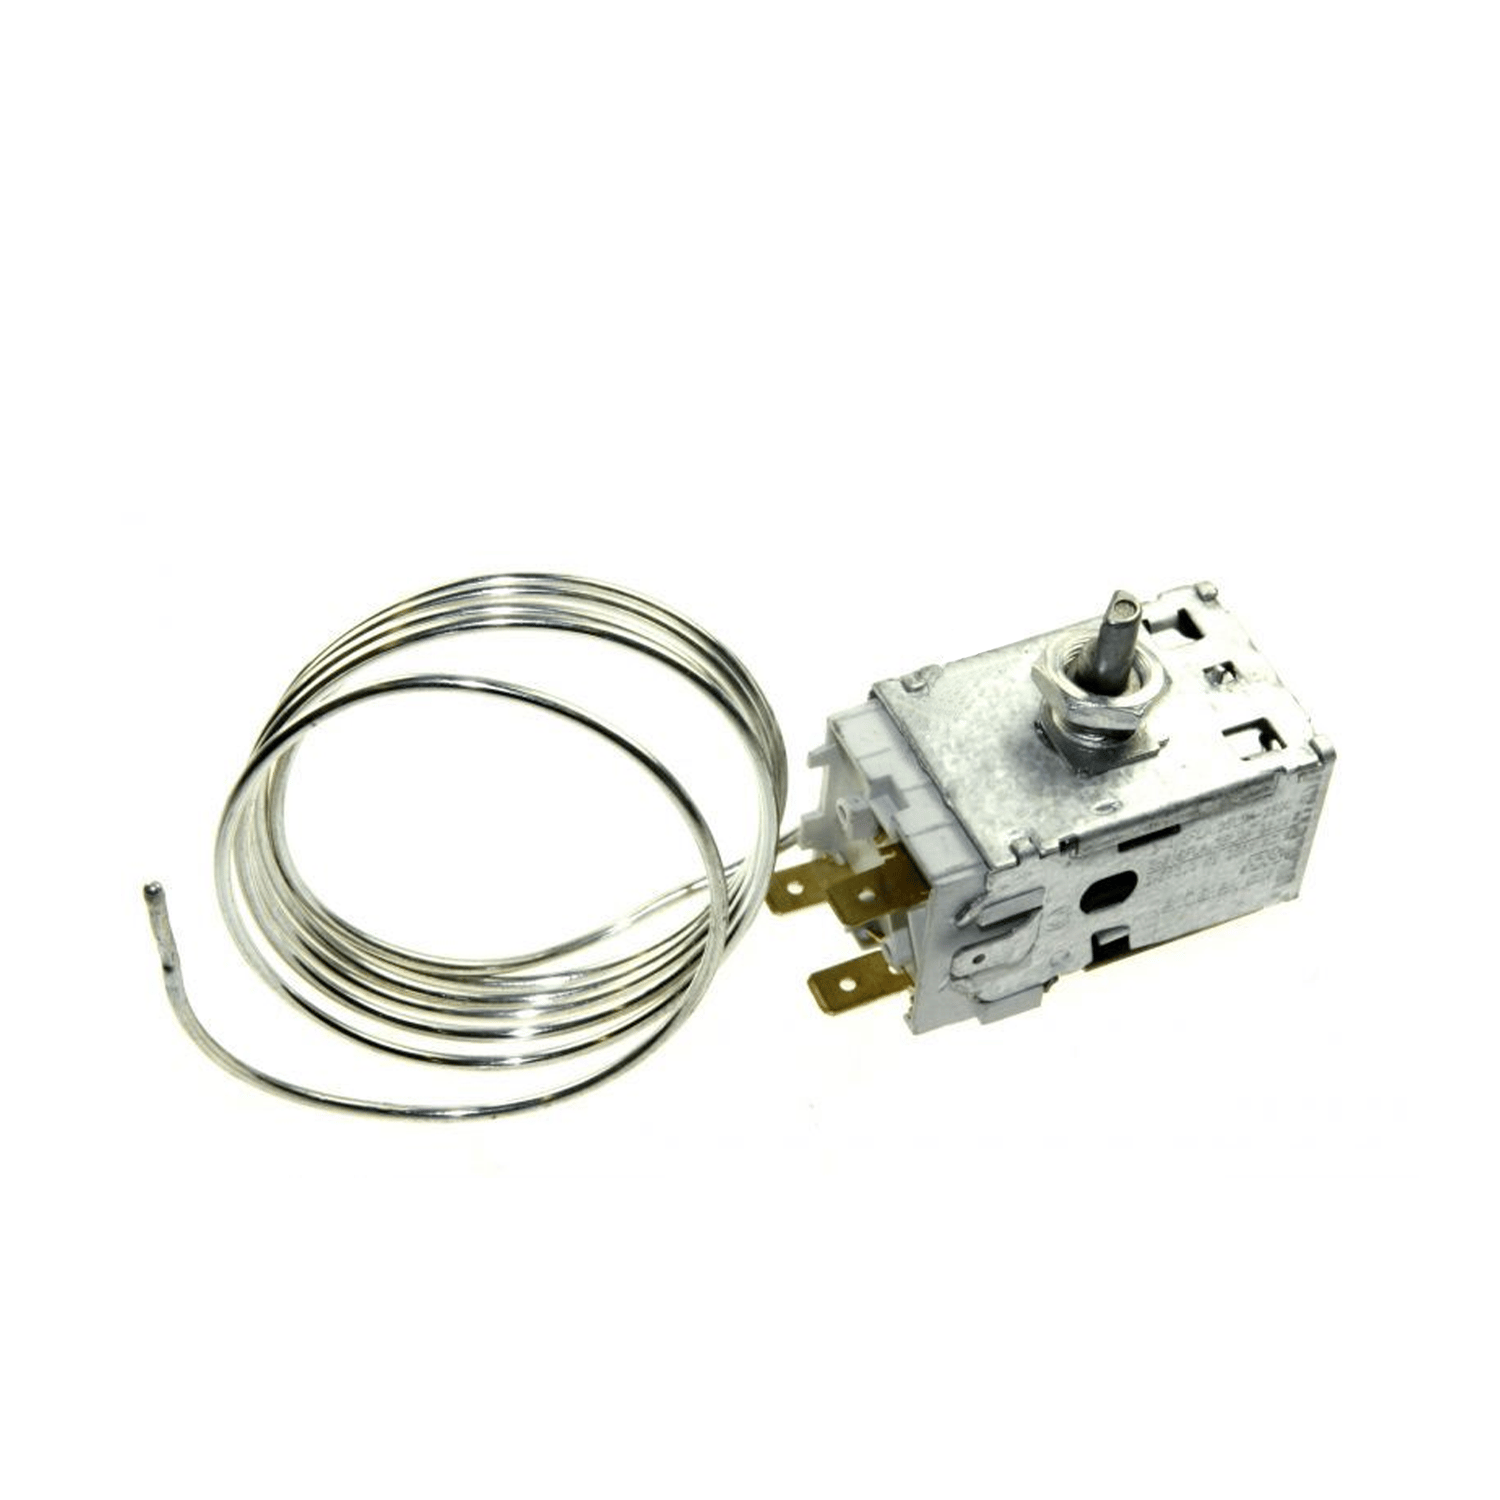 Thermostat Atea C003-12704 für Kühlschrank WHIRLPOOL/INDESIT, min -14 °C, max -29,5 °C, L 1150 mm